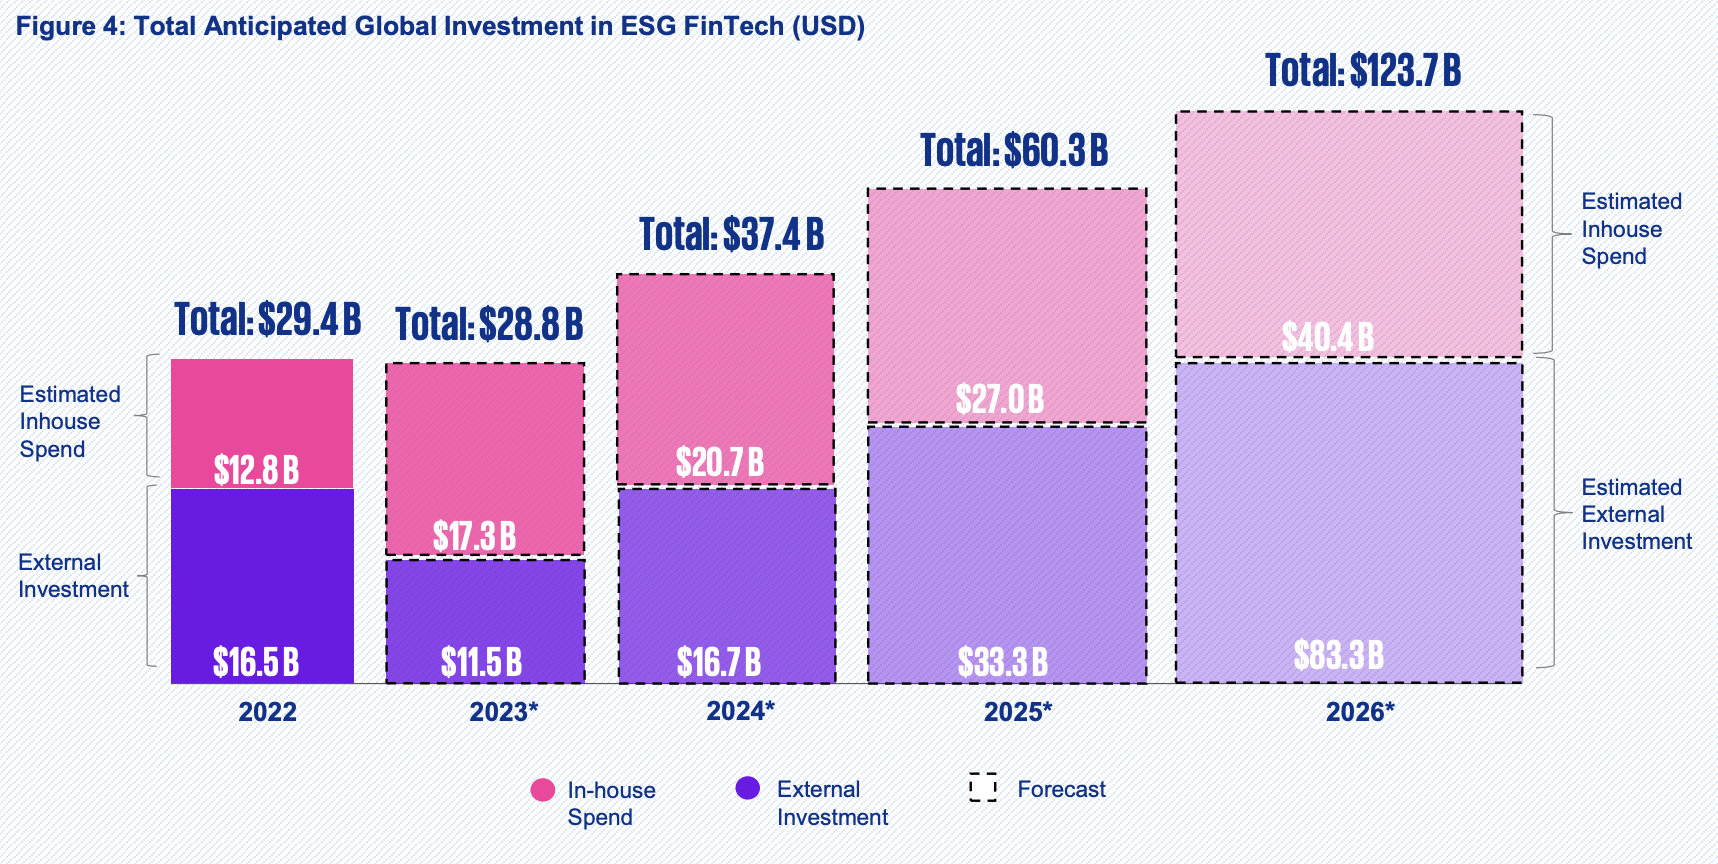 ईएसजी फिनटेक में कुल प्रत्याशित वैश्विक निवेश (यूएस$)